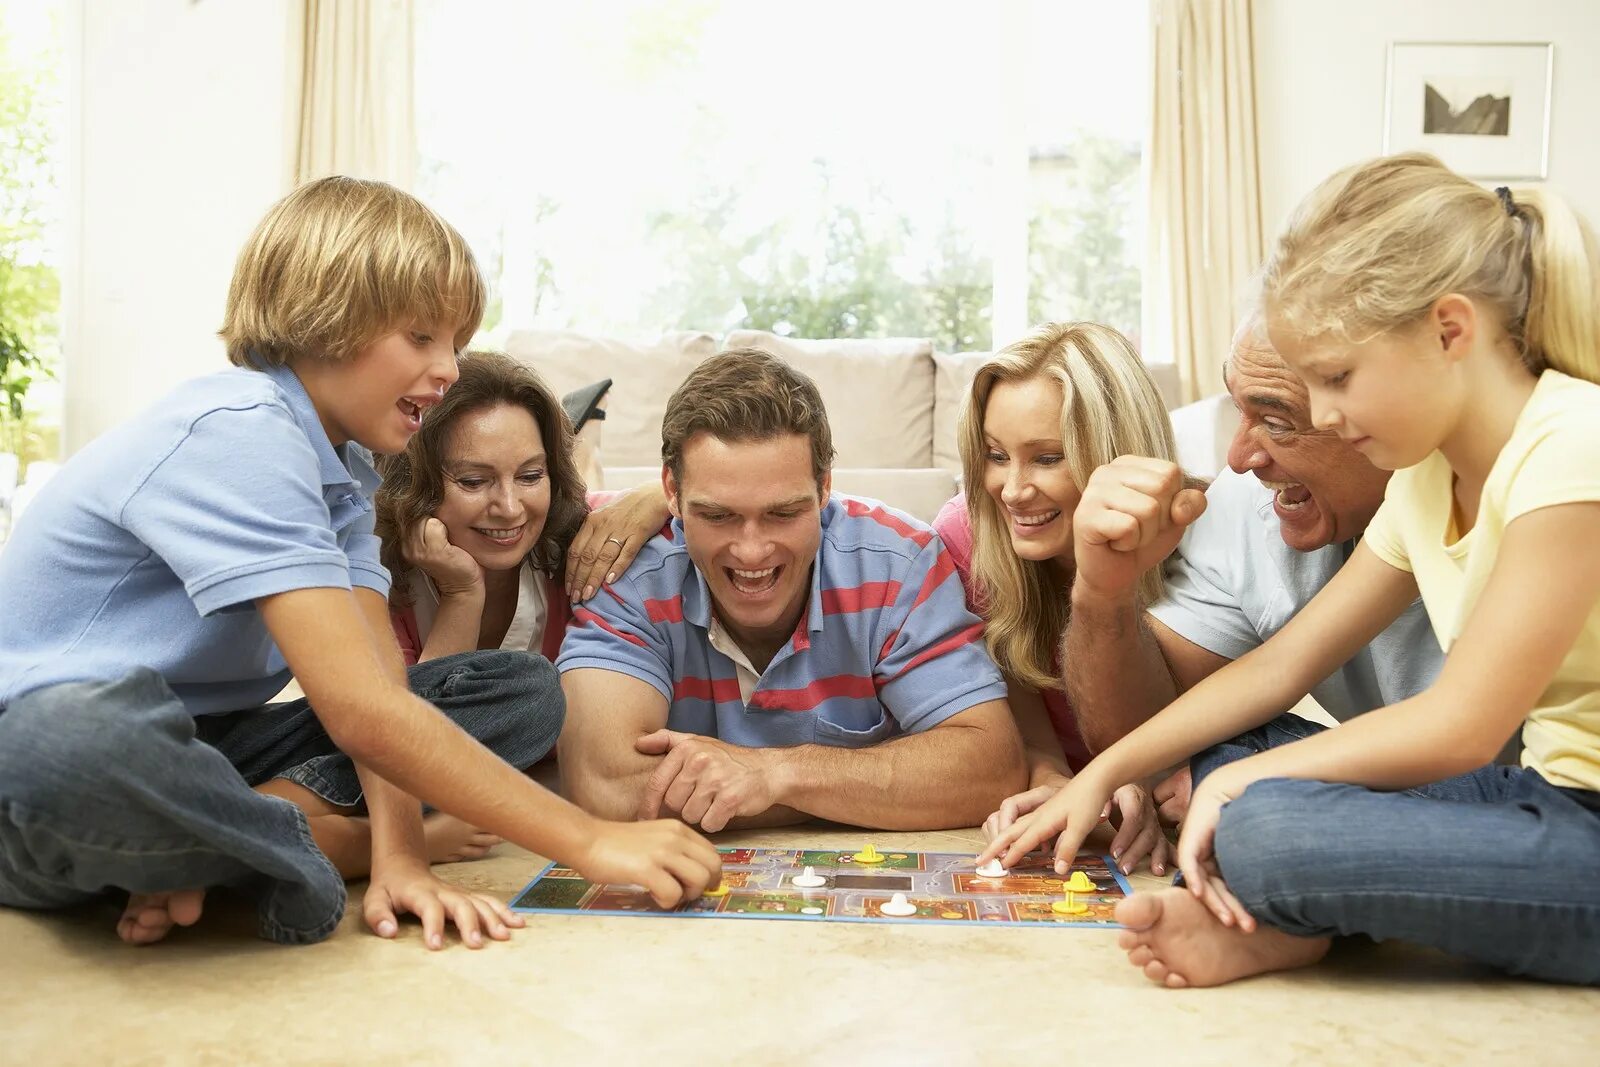 Вечер с семьей. Общение в кругу семьи. Времяпровождение с семьей. Семья играет в настольные игры. Семья за настольной игрой.